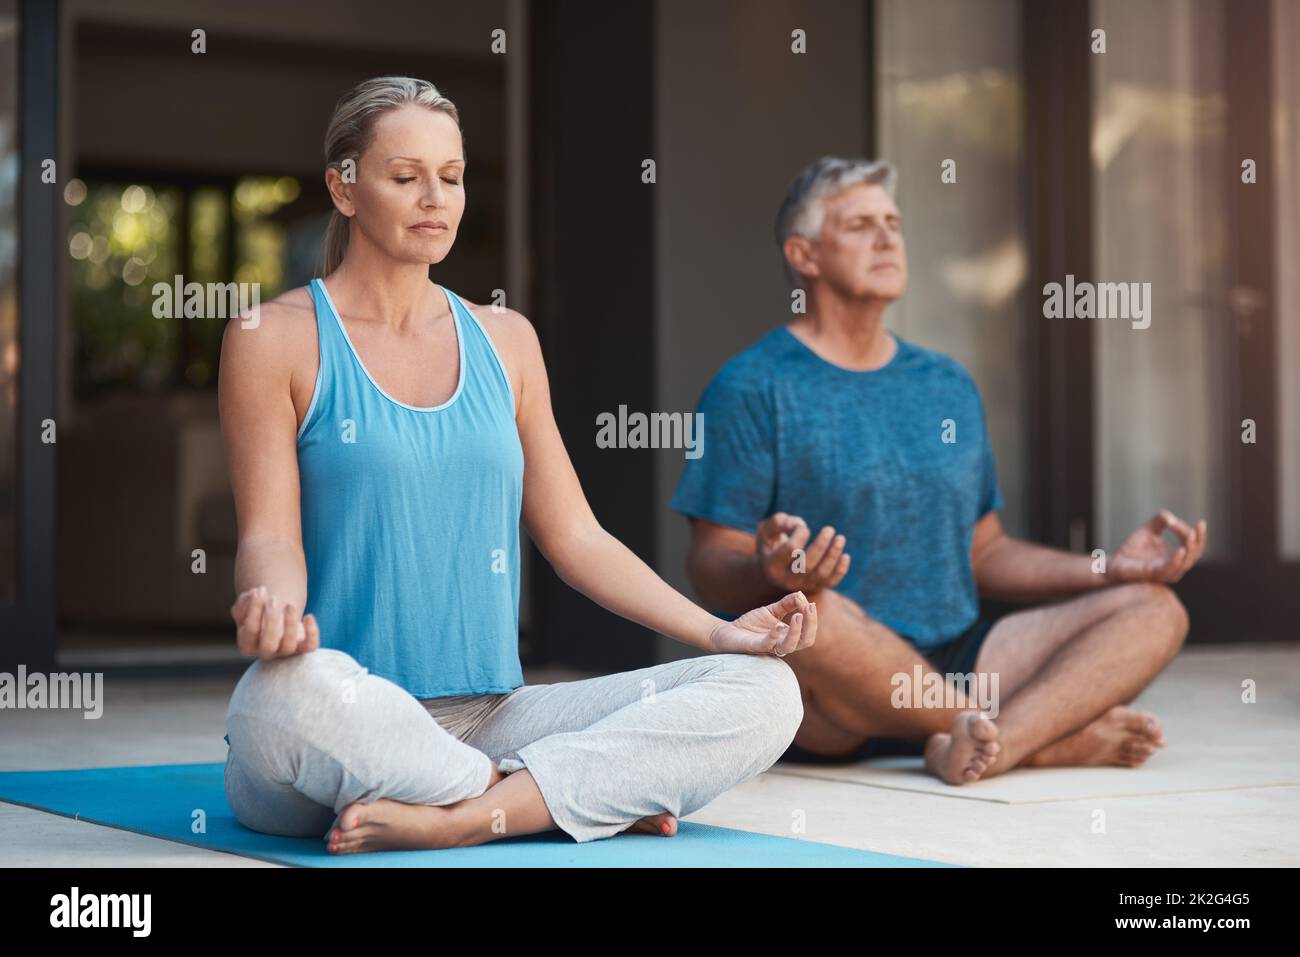 La pace viene dentro. Shot di una coppia matura che si impegna tranquillamente in una posa yoga con le gambe incrociate. Foto Stock